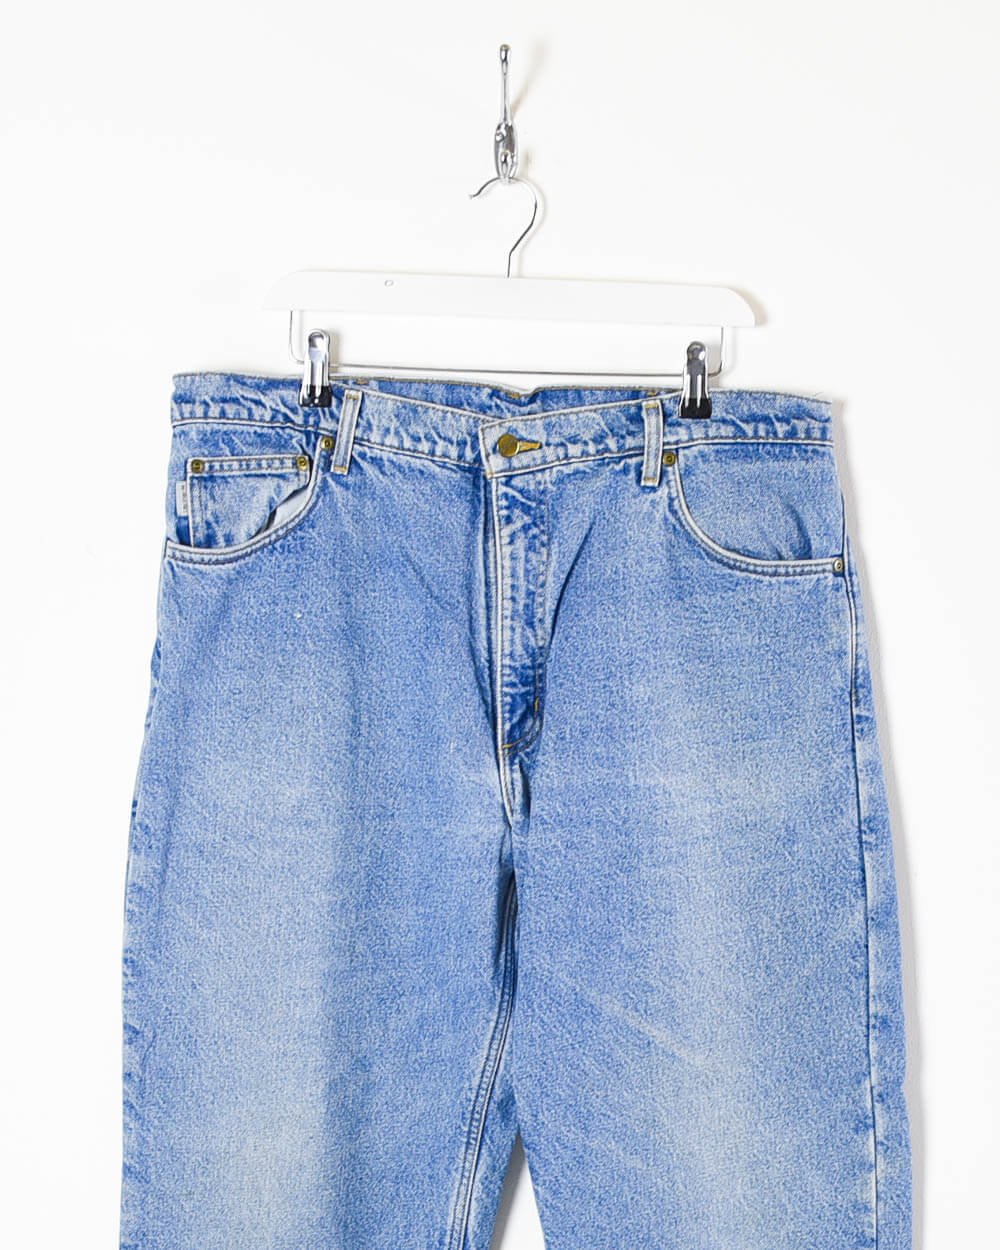 Blue Carhartt Jeans - W38 L32